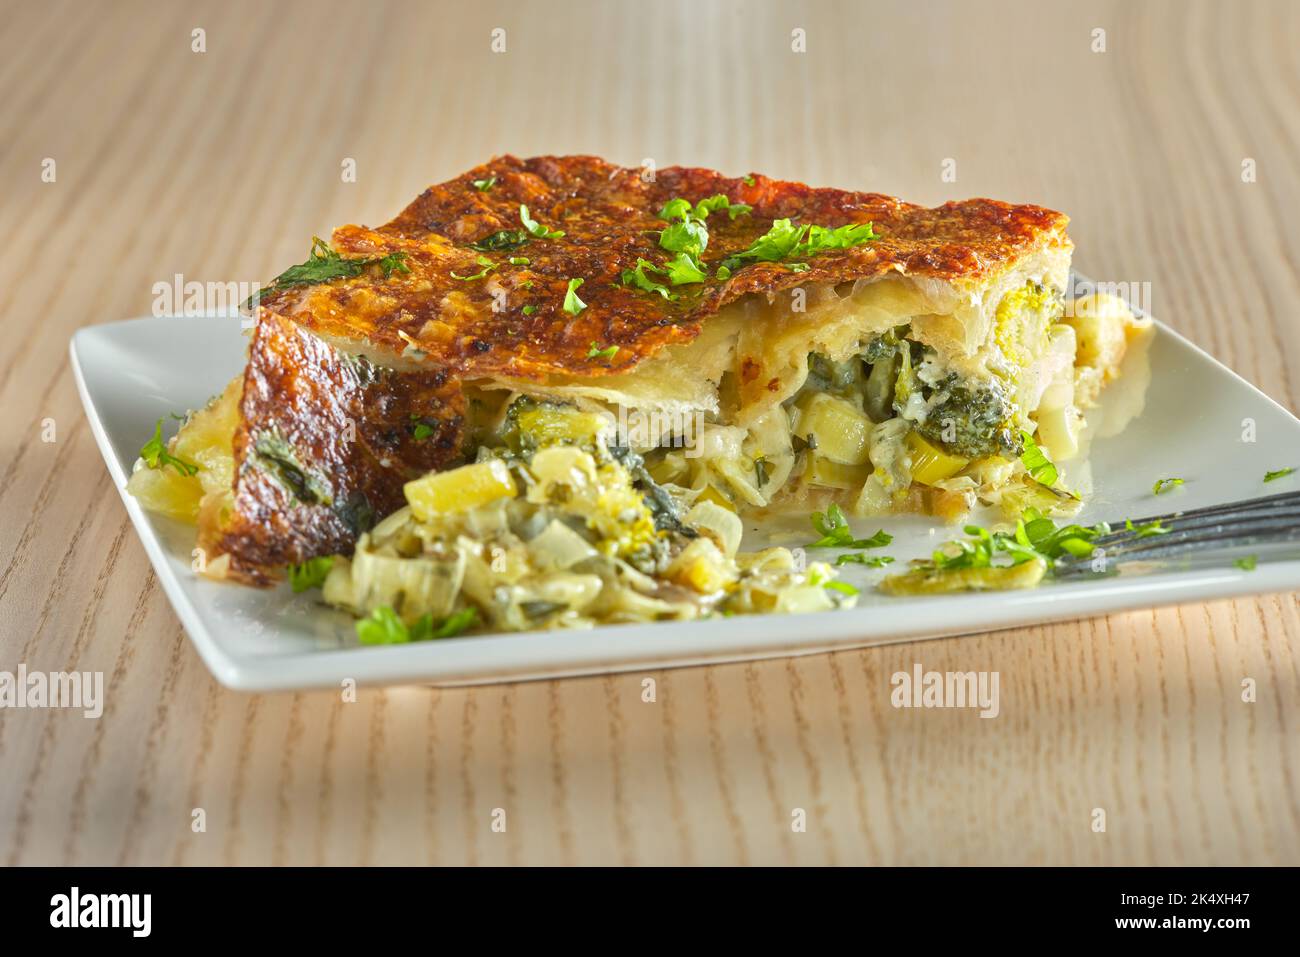 Torta di broccoli, formaggio, panna e porro - vista ravvicinata Foto Stock